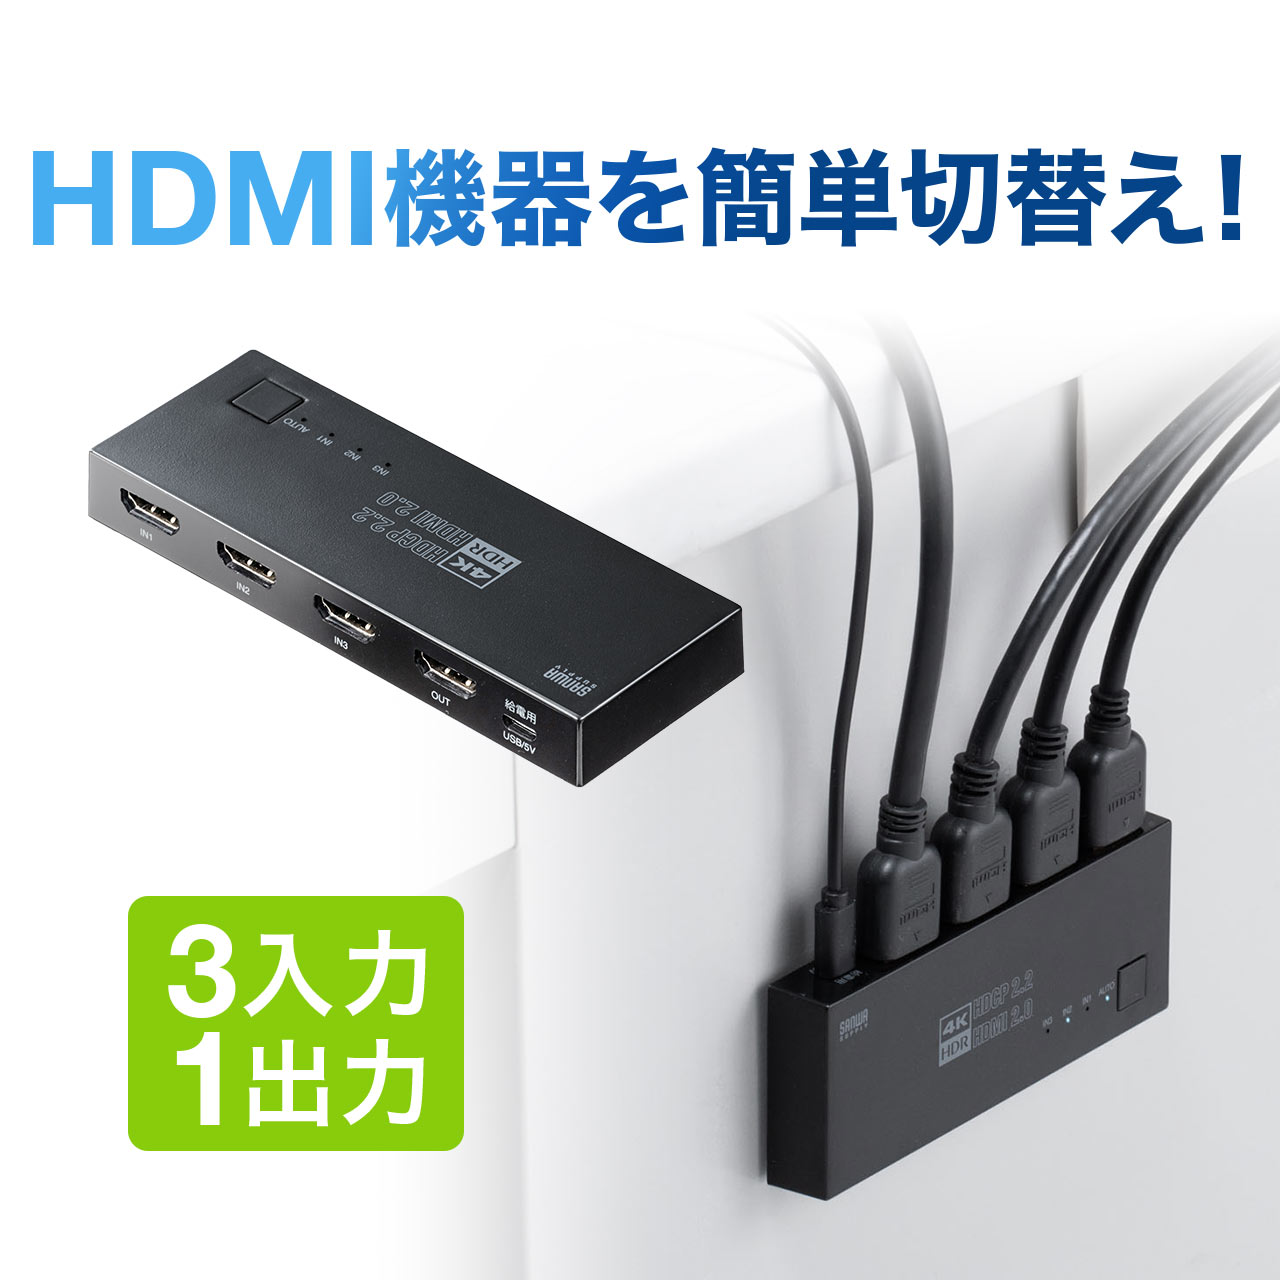 400-SW035 驚きの価格が実現 人気の製品 サンワダイレクト限定品 送料無料 HDMI 切替器 4K 60Hz HDR 手動切り替え マグネットシート付 自動 3入力1出力 HDCP2.2 セレクター パソコン